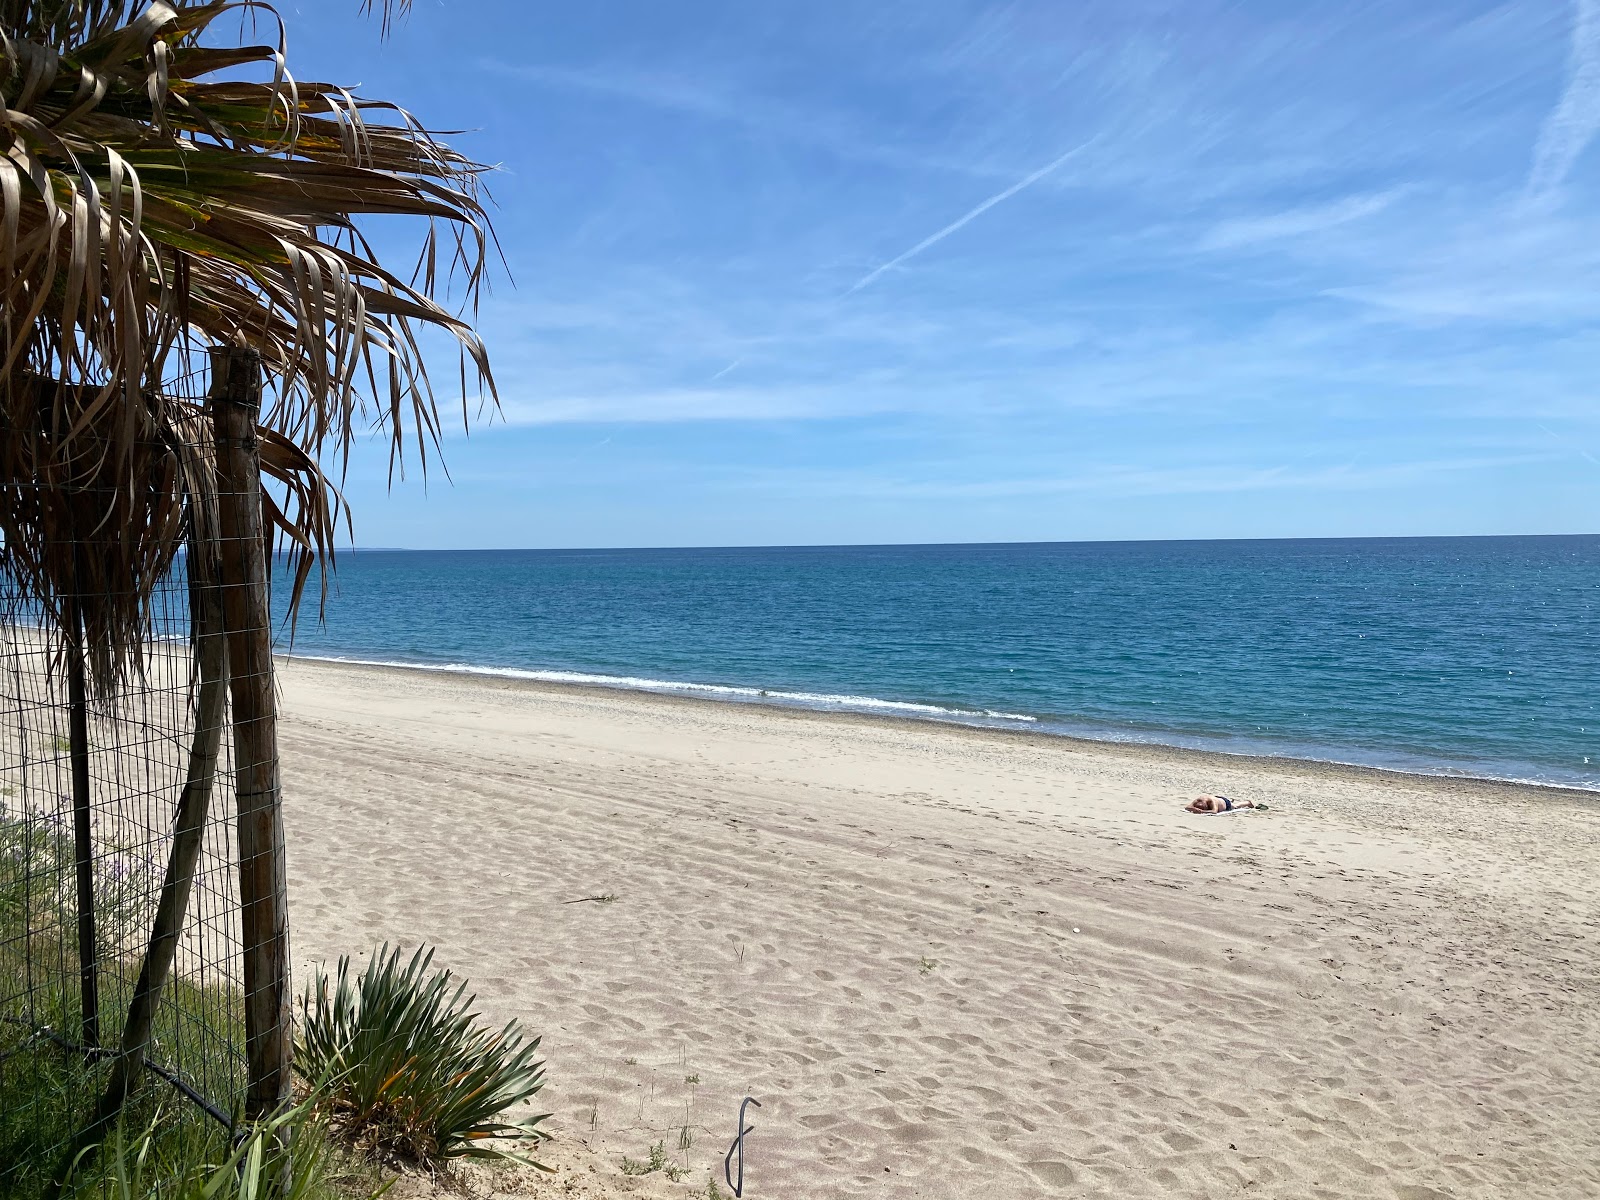 Villaggio le Roccelle beach'in fotoğrafı düz ve uzun ile birlikte